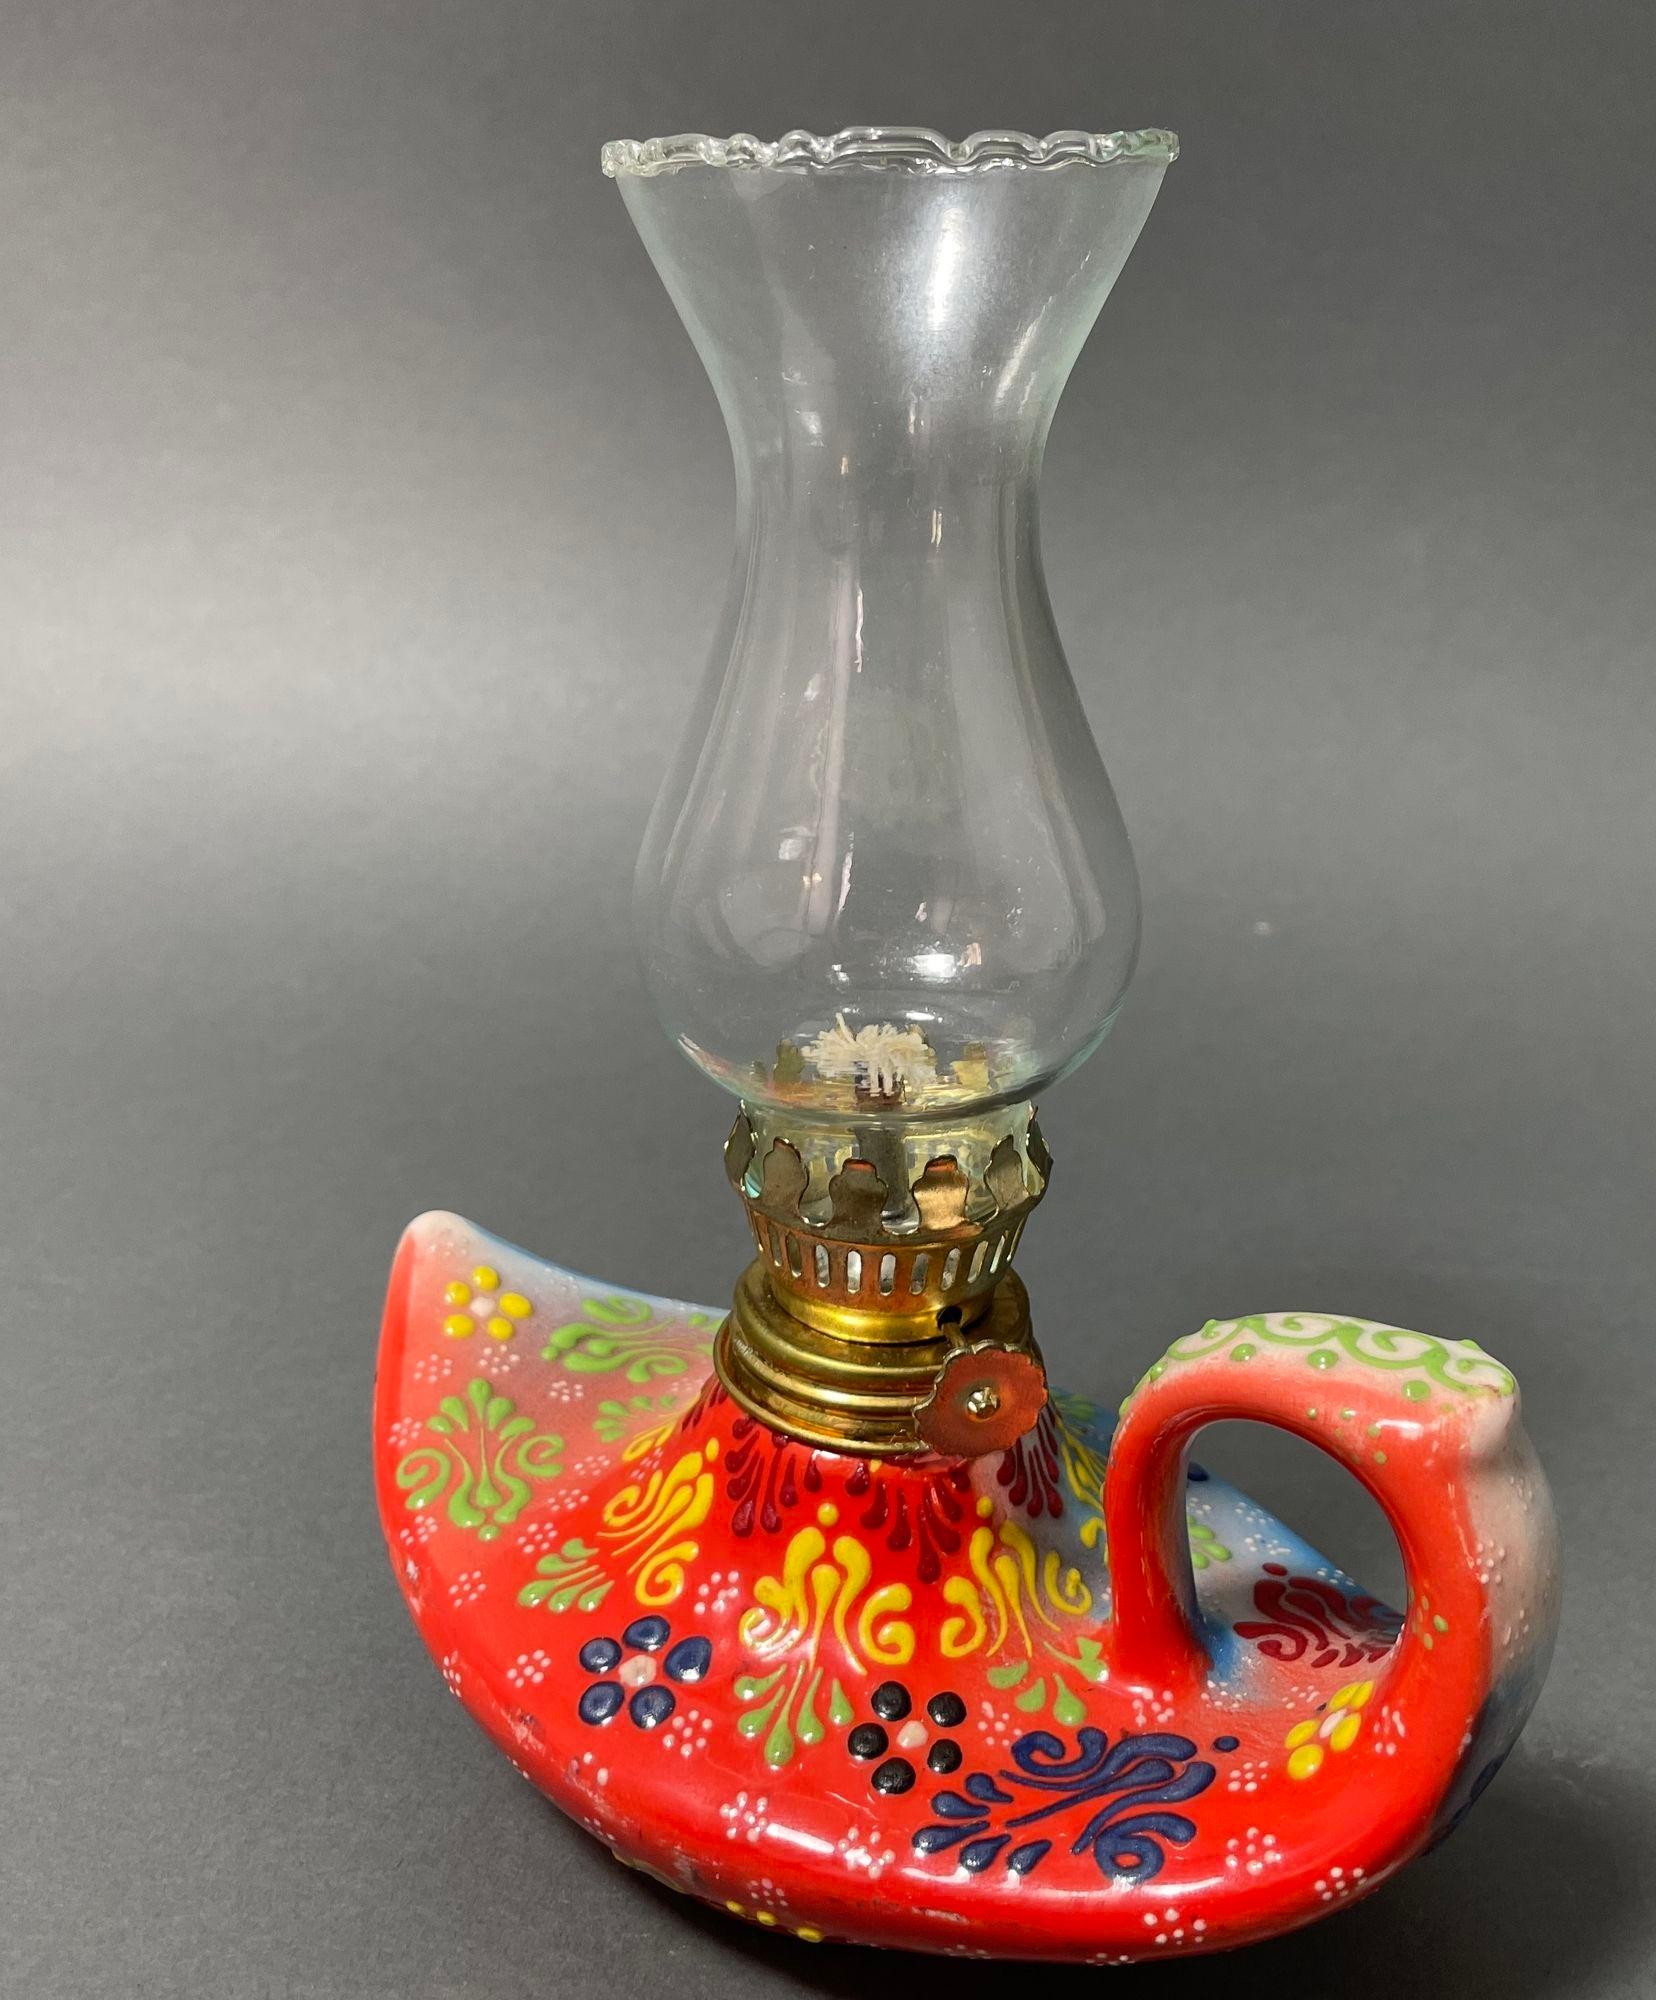 Vintage Aladdin style fait main en céramique rouge lampe à huile turque, lanterne lampe à huile ouragan.
Cette lampe à huile a une base en poterie qui évoque la lampe d'Aladin des Mille et une nuits.
Céramique texturée peinte à la main avec un motif